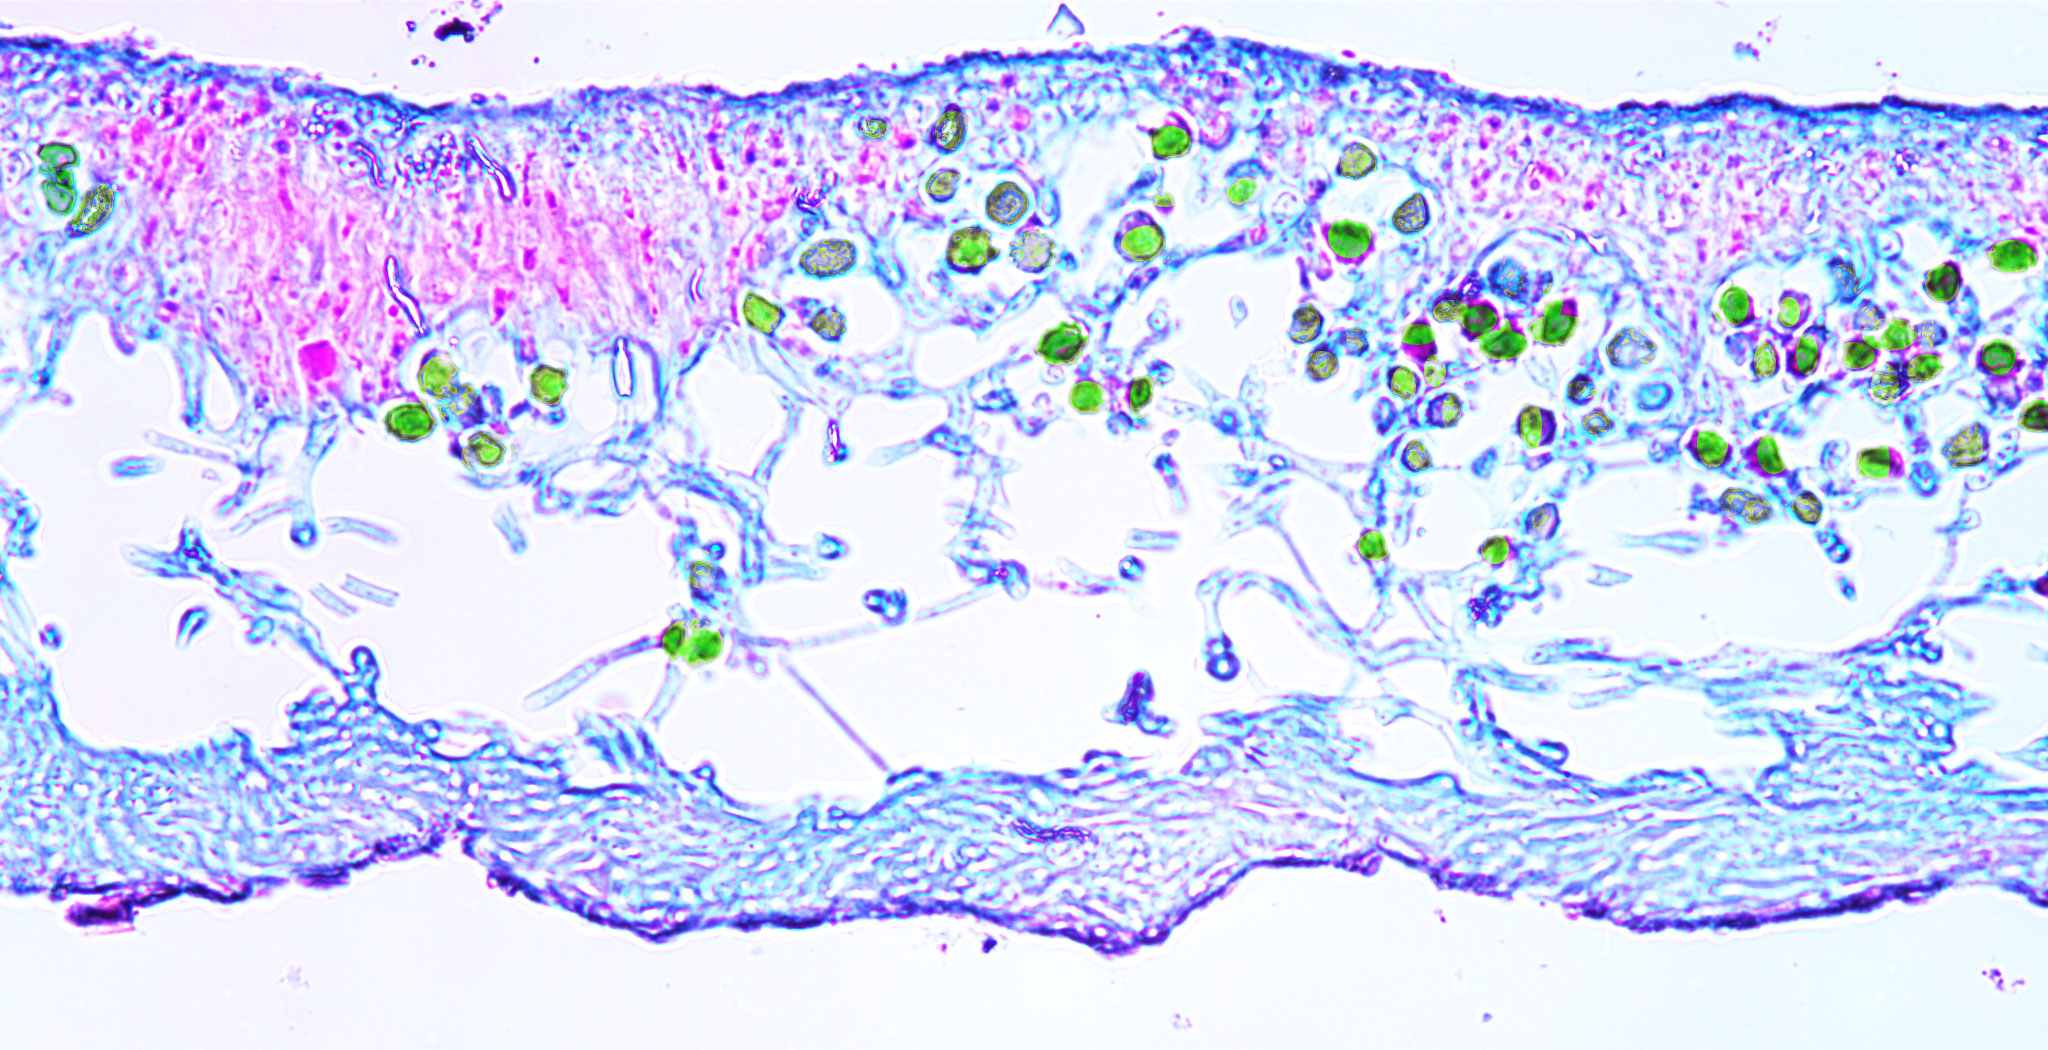 Physcia lichen (400X total magnification)